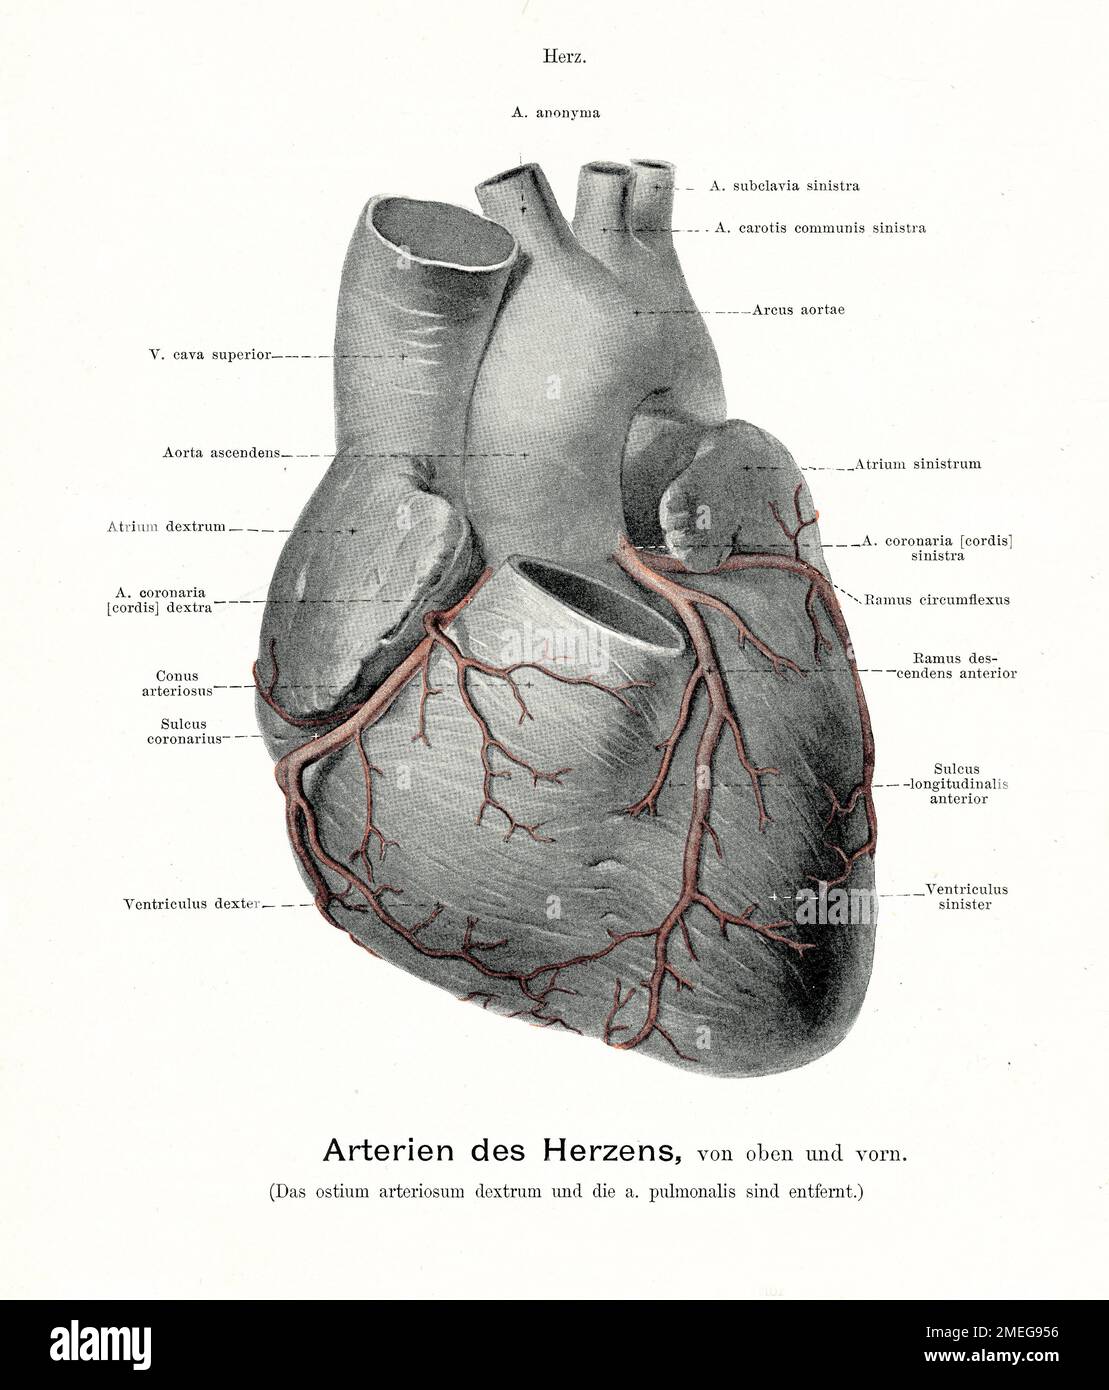 Illustration ancienne de l'anatomie des artères du coeur, avec des descriptions anatomiques allemandes Banque D'Images